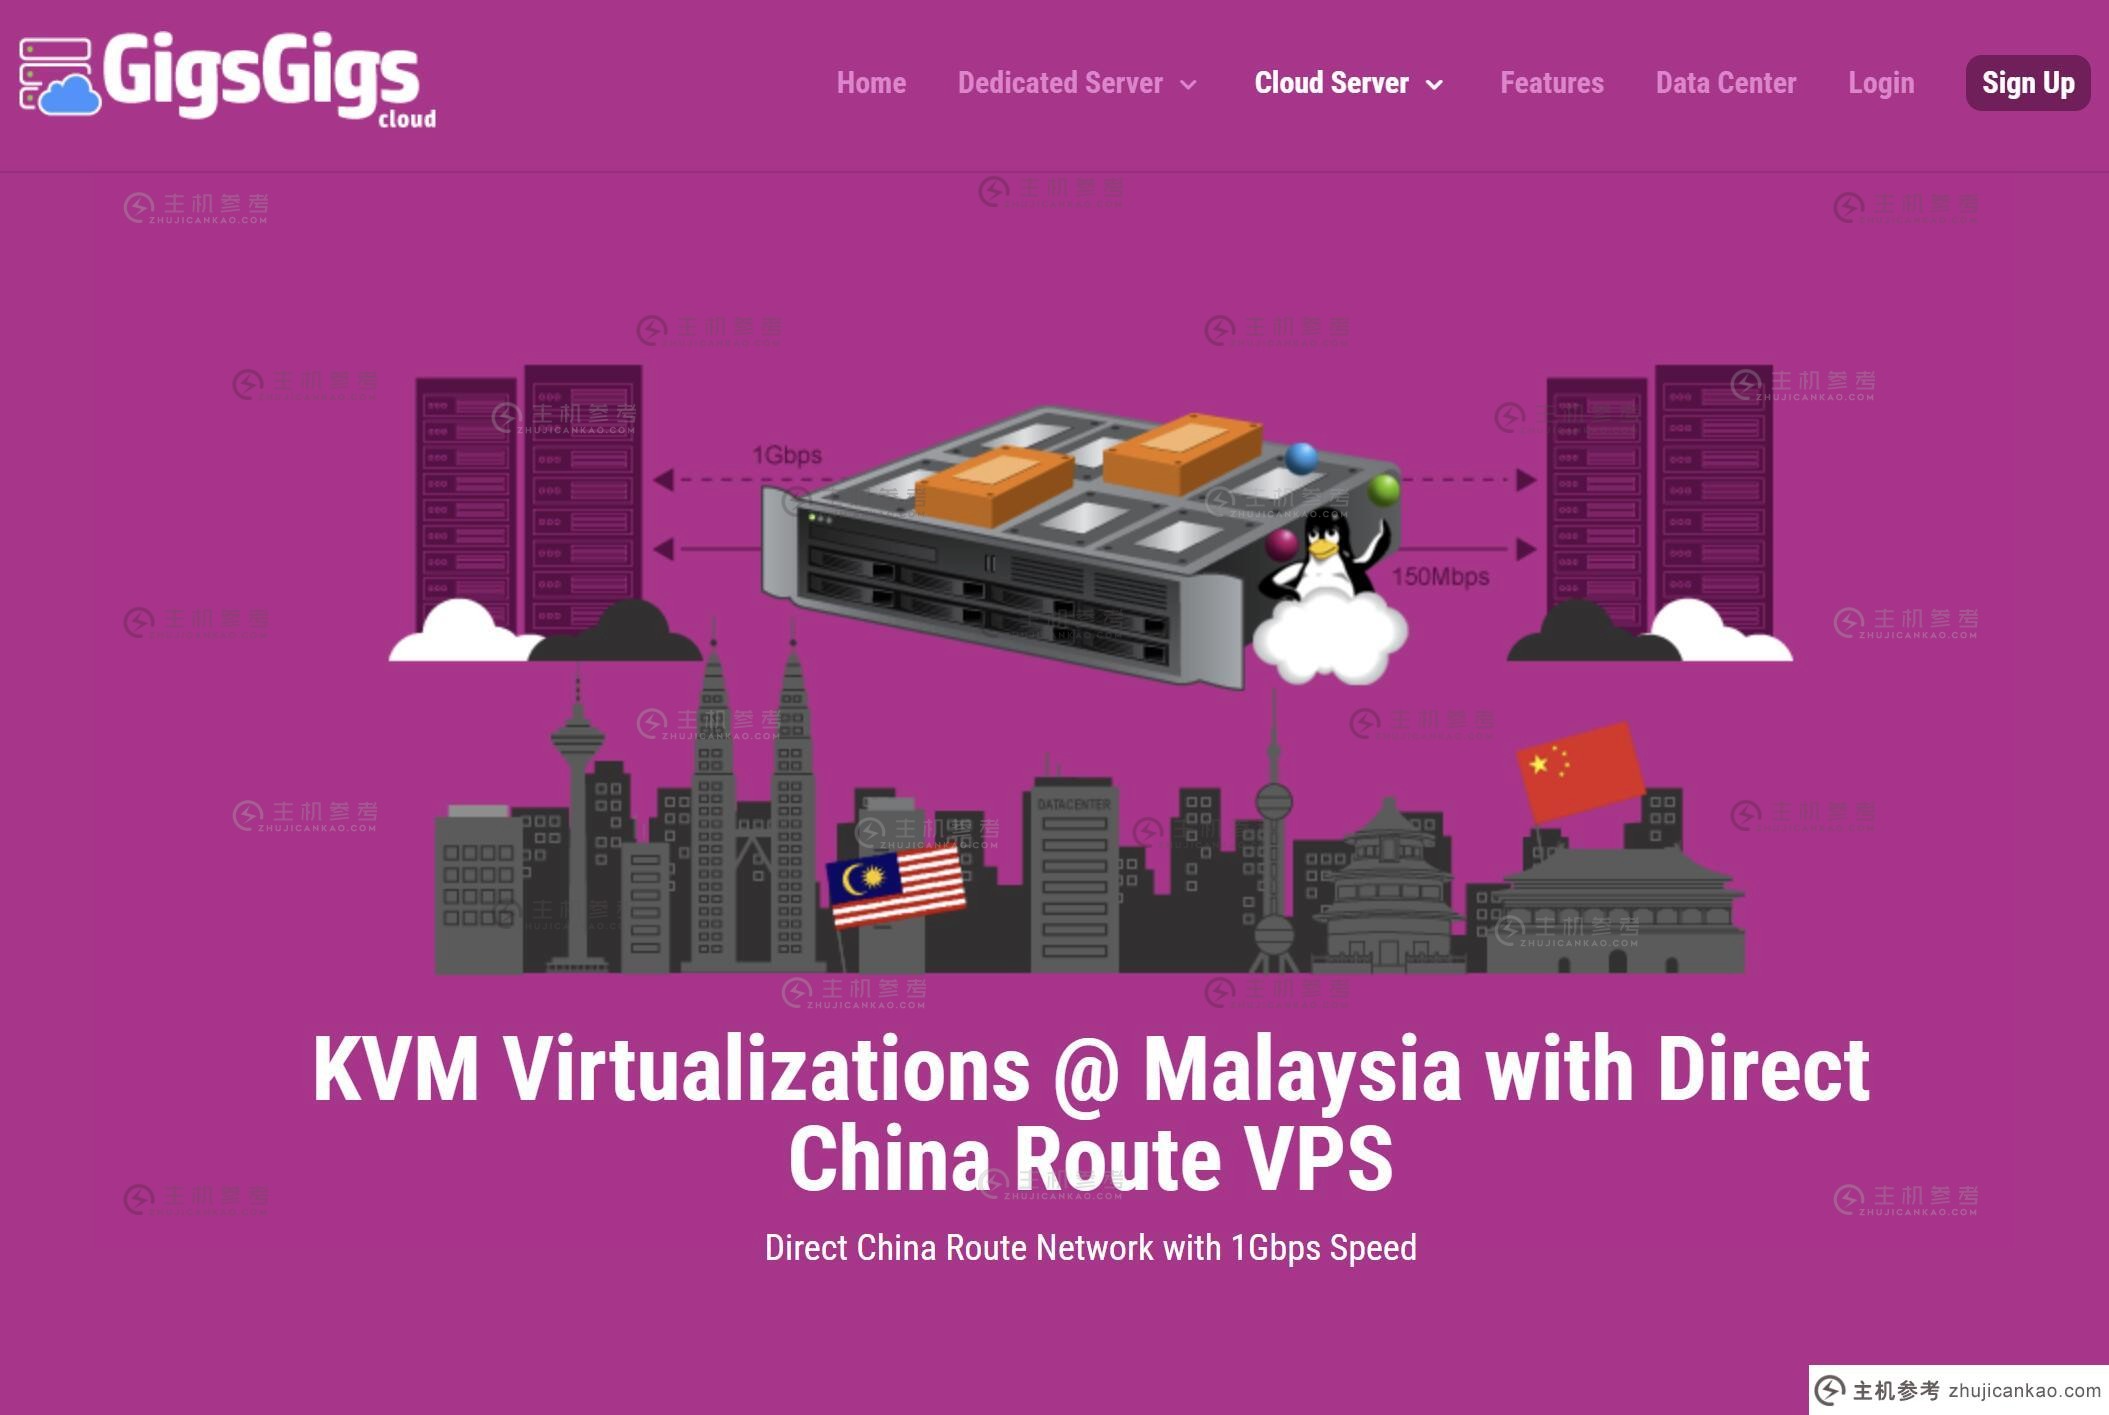 马来西亚VPS推荐 - GigsGigs